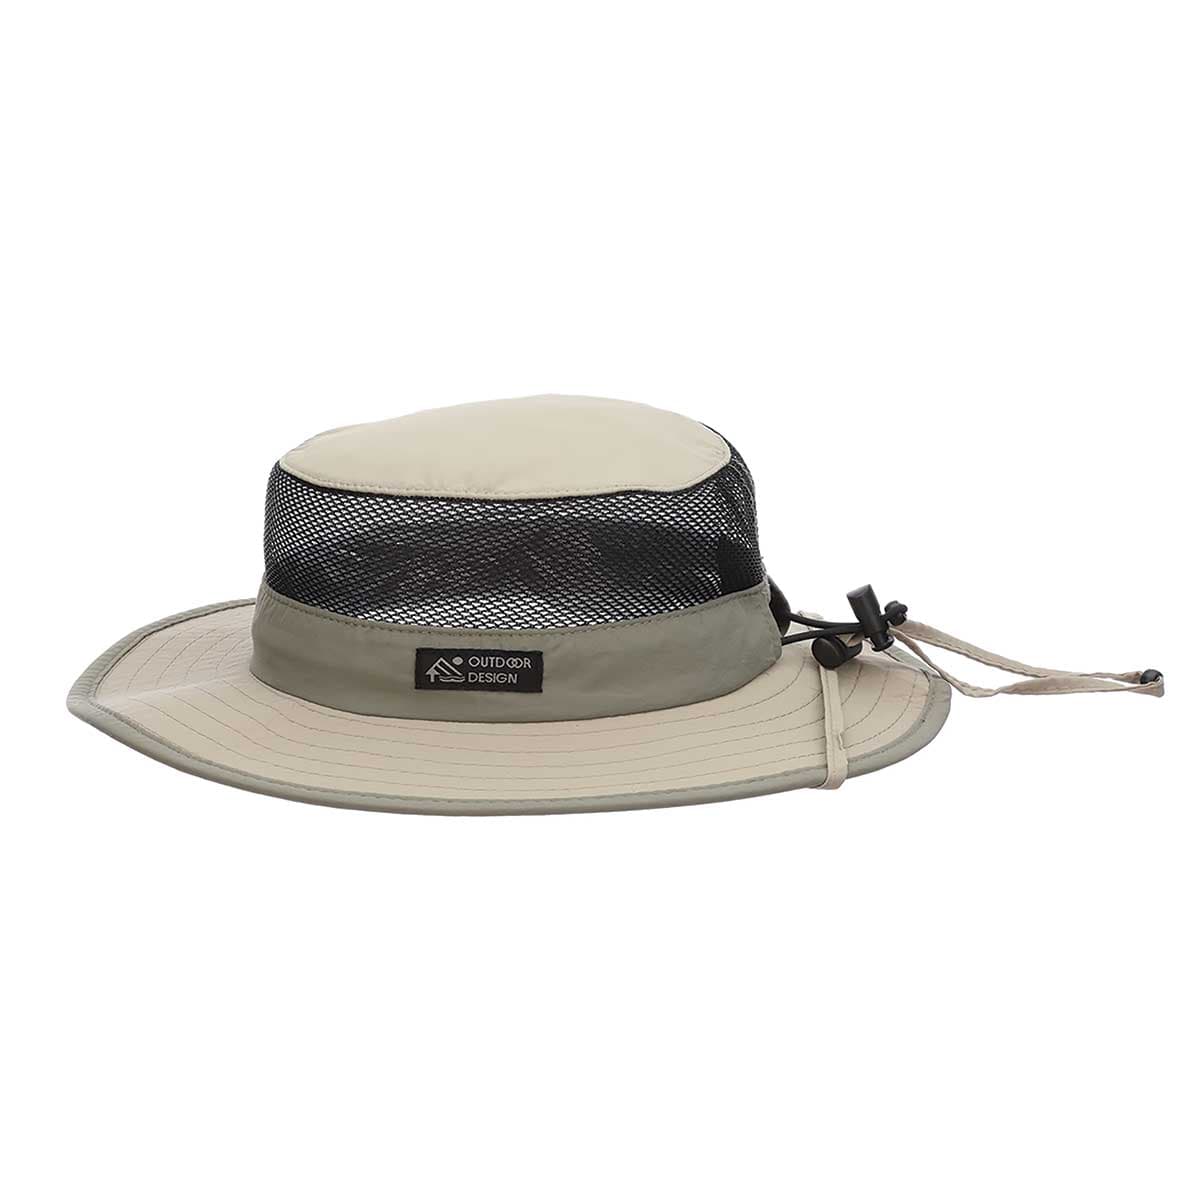 Supplex Nylon Boonie Hat with 3" Brim